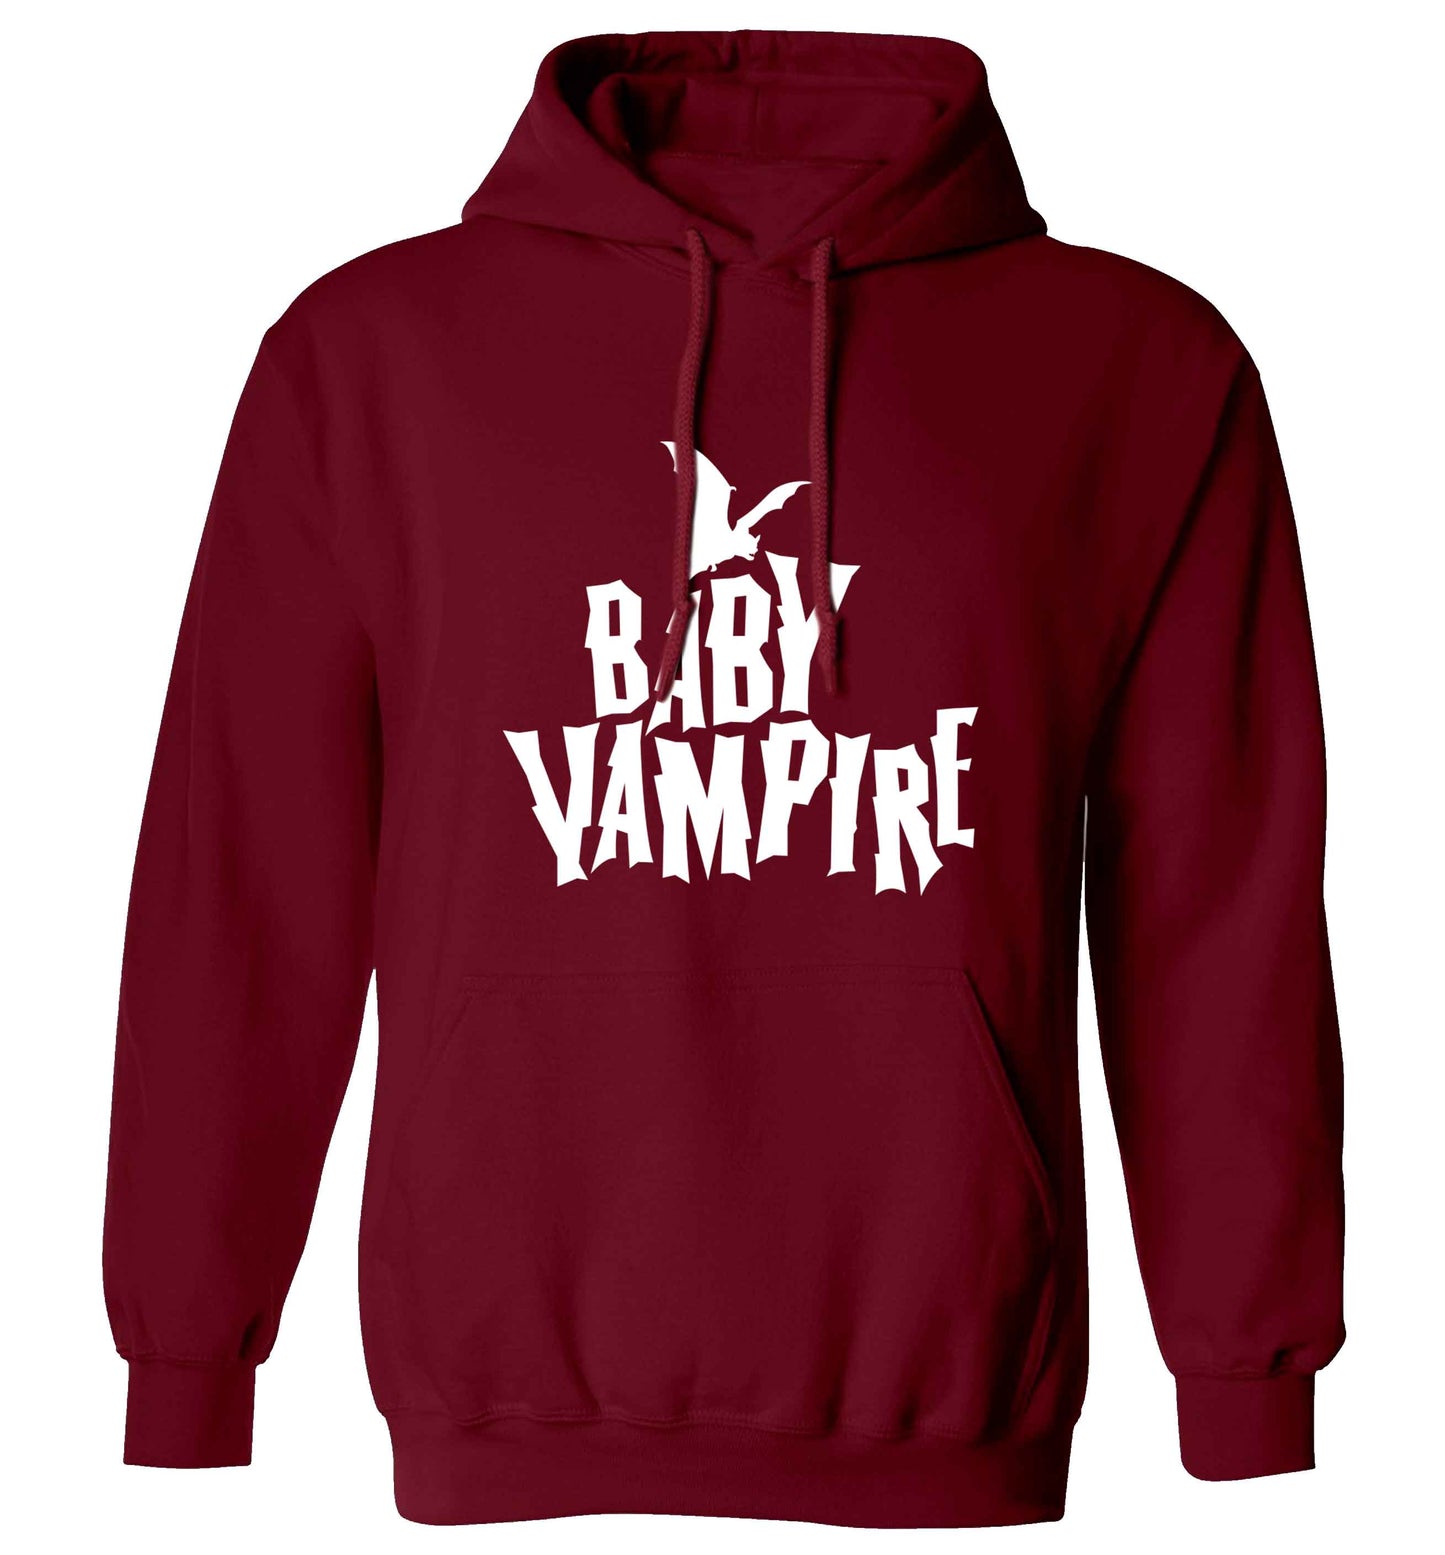 Baby vampire adults unisex maroon hoodie 2XL